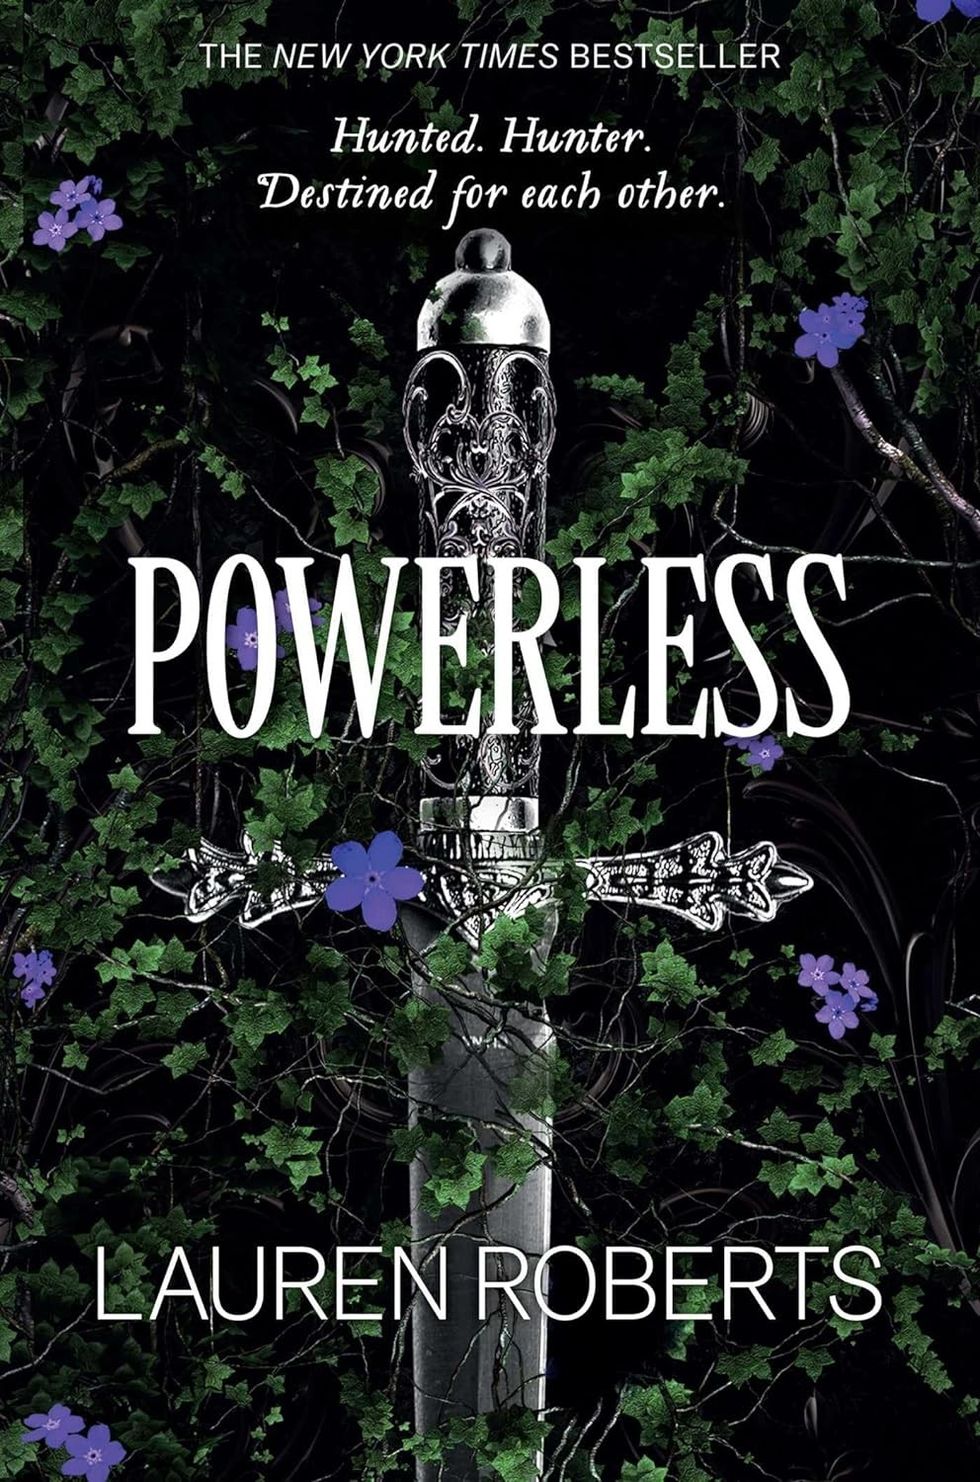 "Powerless" romantasy books